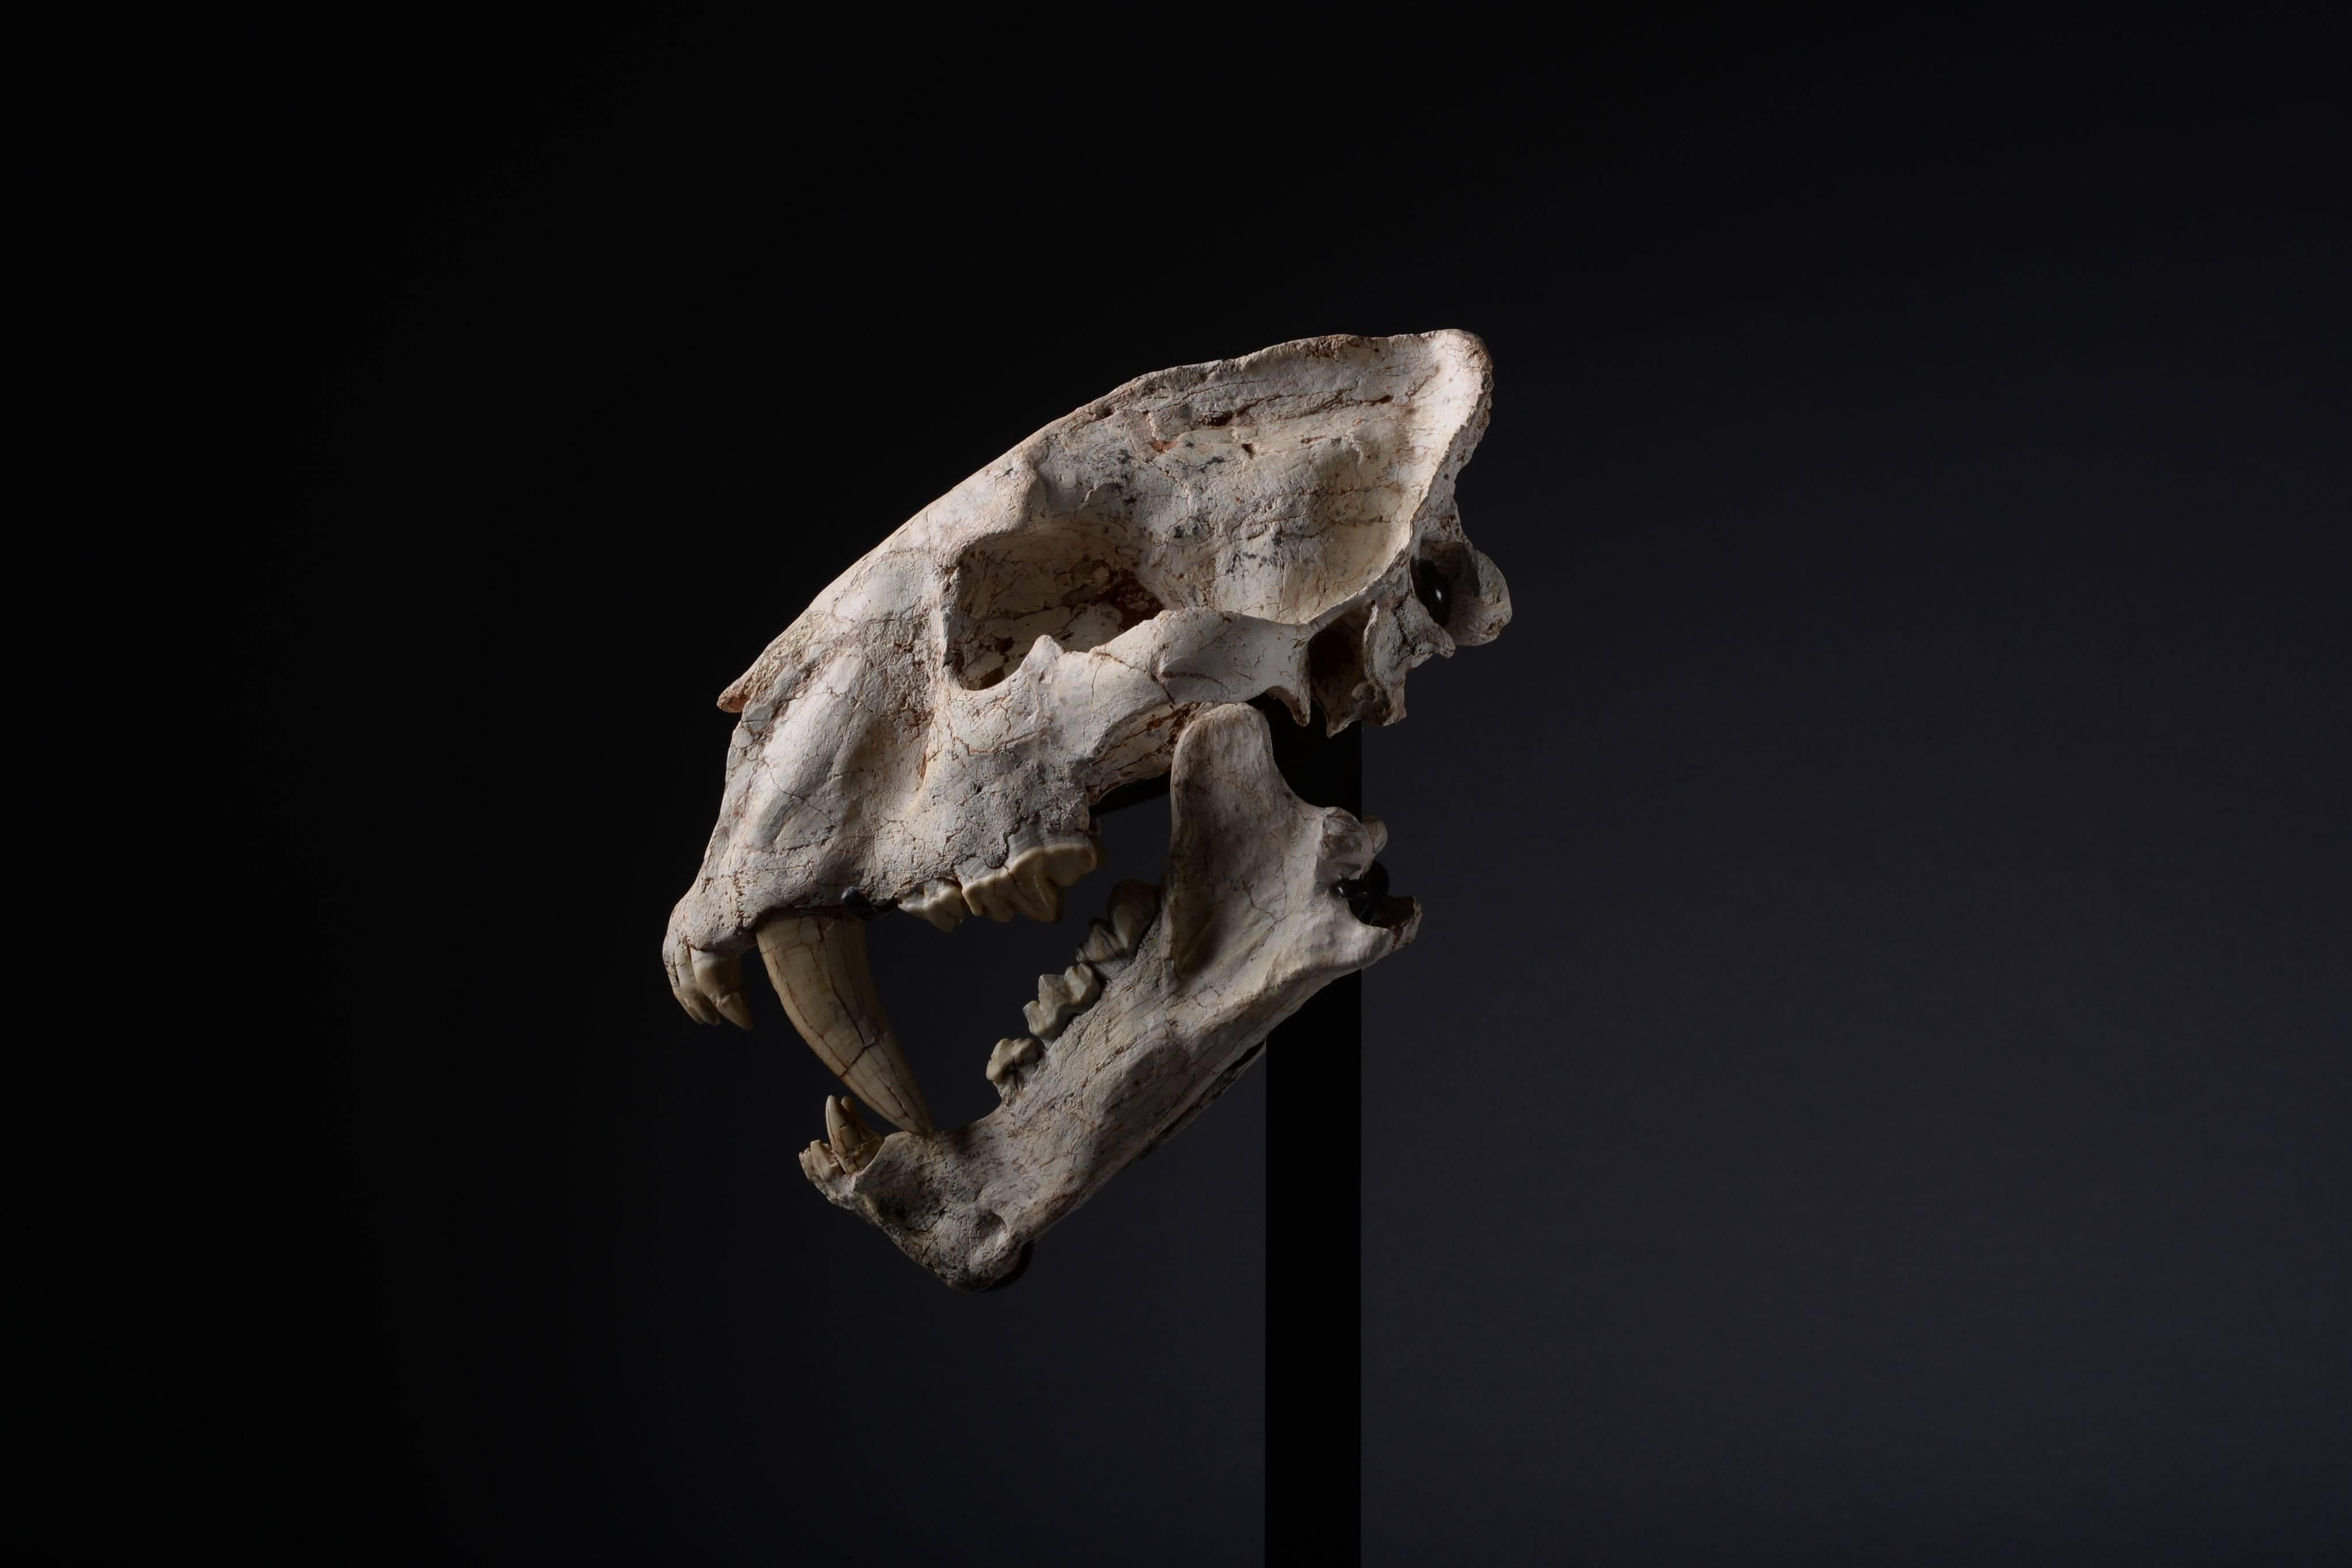 sabertooth skull for sale